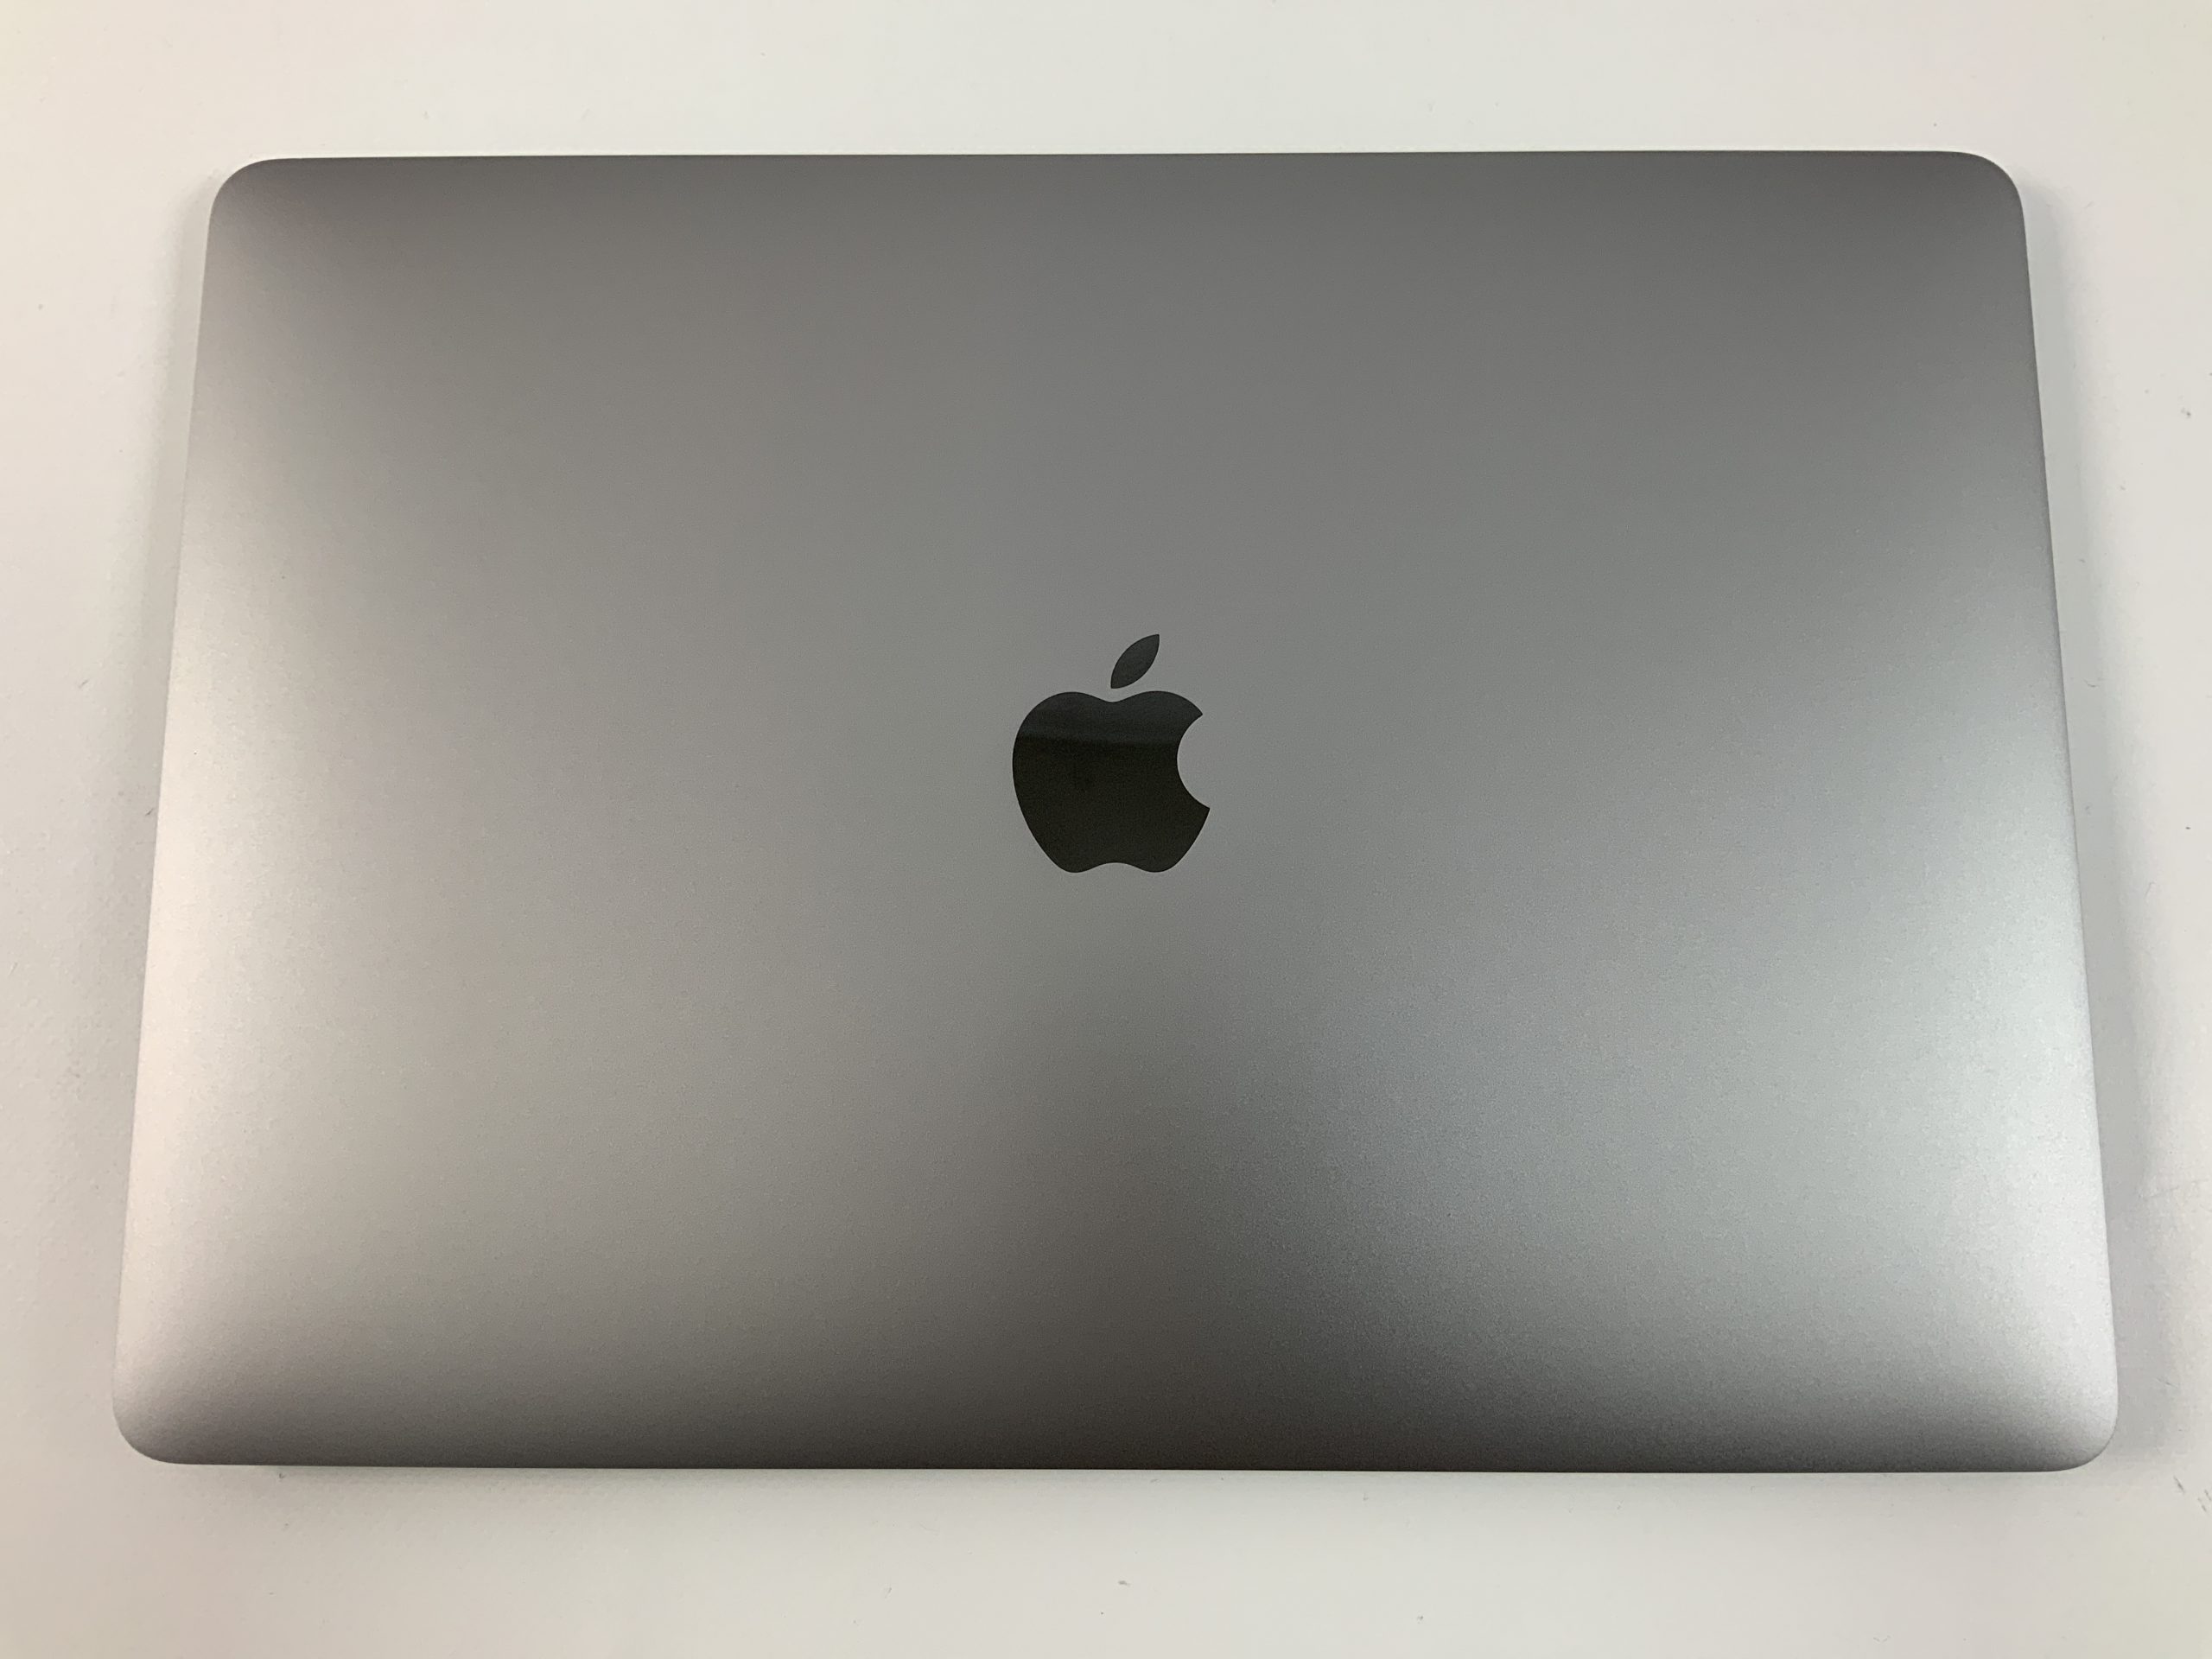 MacBook Air 13" Mid 2019 (Intel Core i5 1.6 GHz 8 GB RAM 512 GB SSD), Space Gray, Intel Core i5 1.6 GHz, 8 GB RAM, 512 GB SSD, image 3